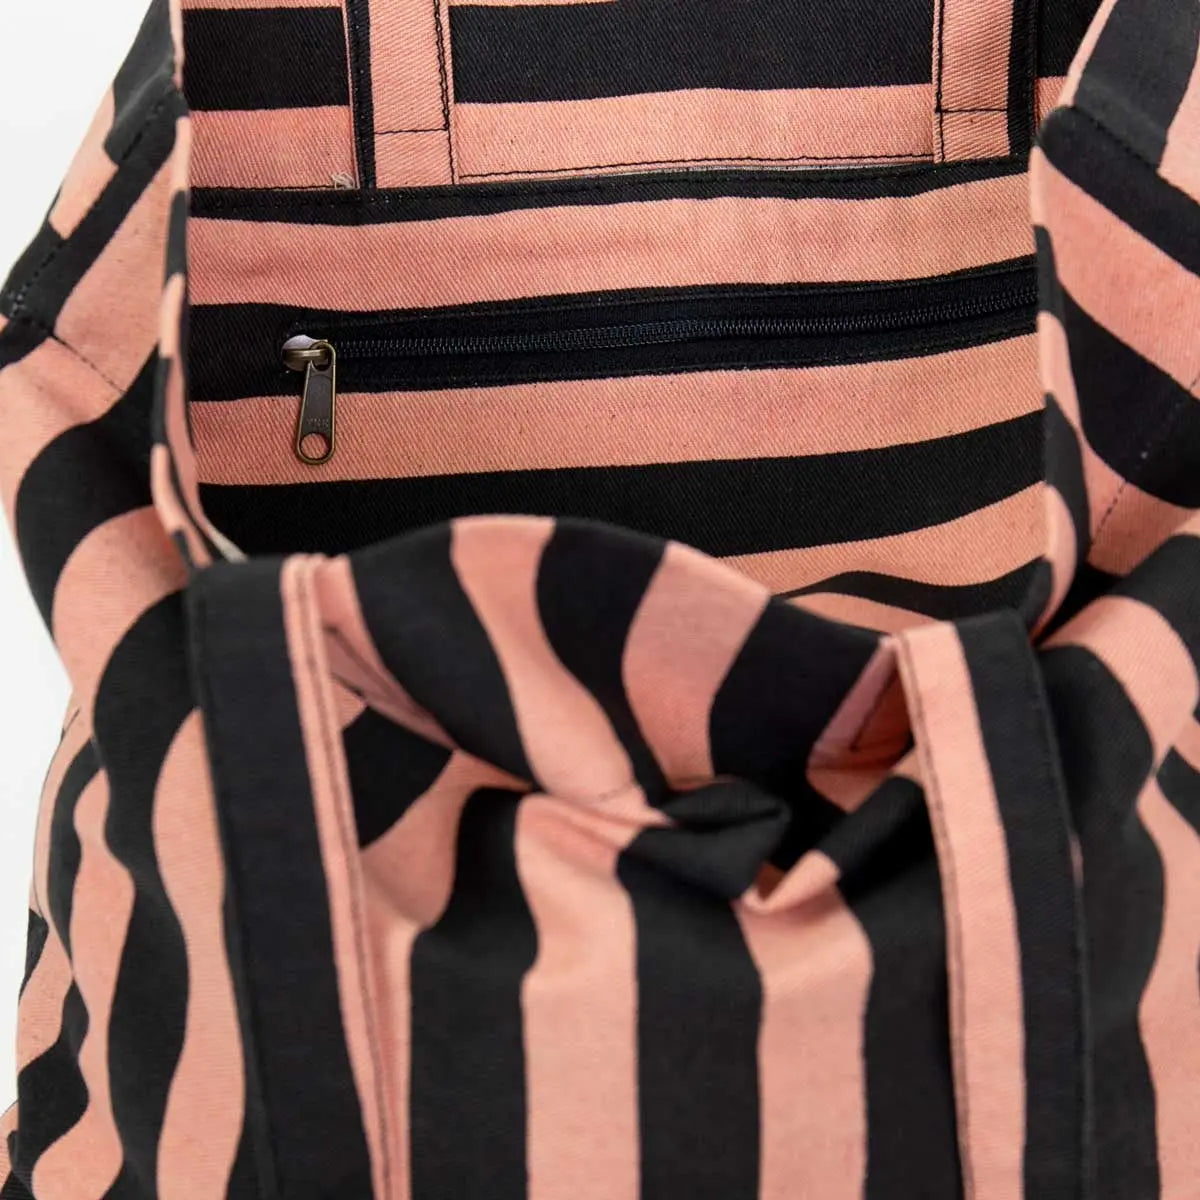 Randa mulepose/taske | Pink/sort stribet Afroart